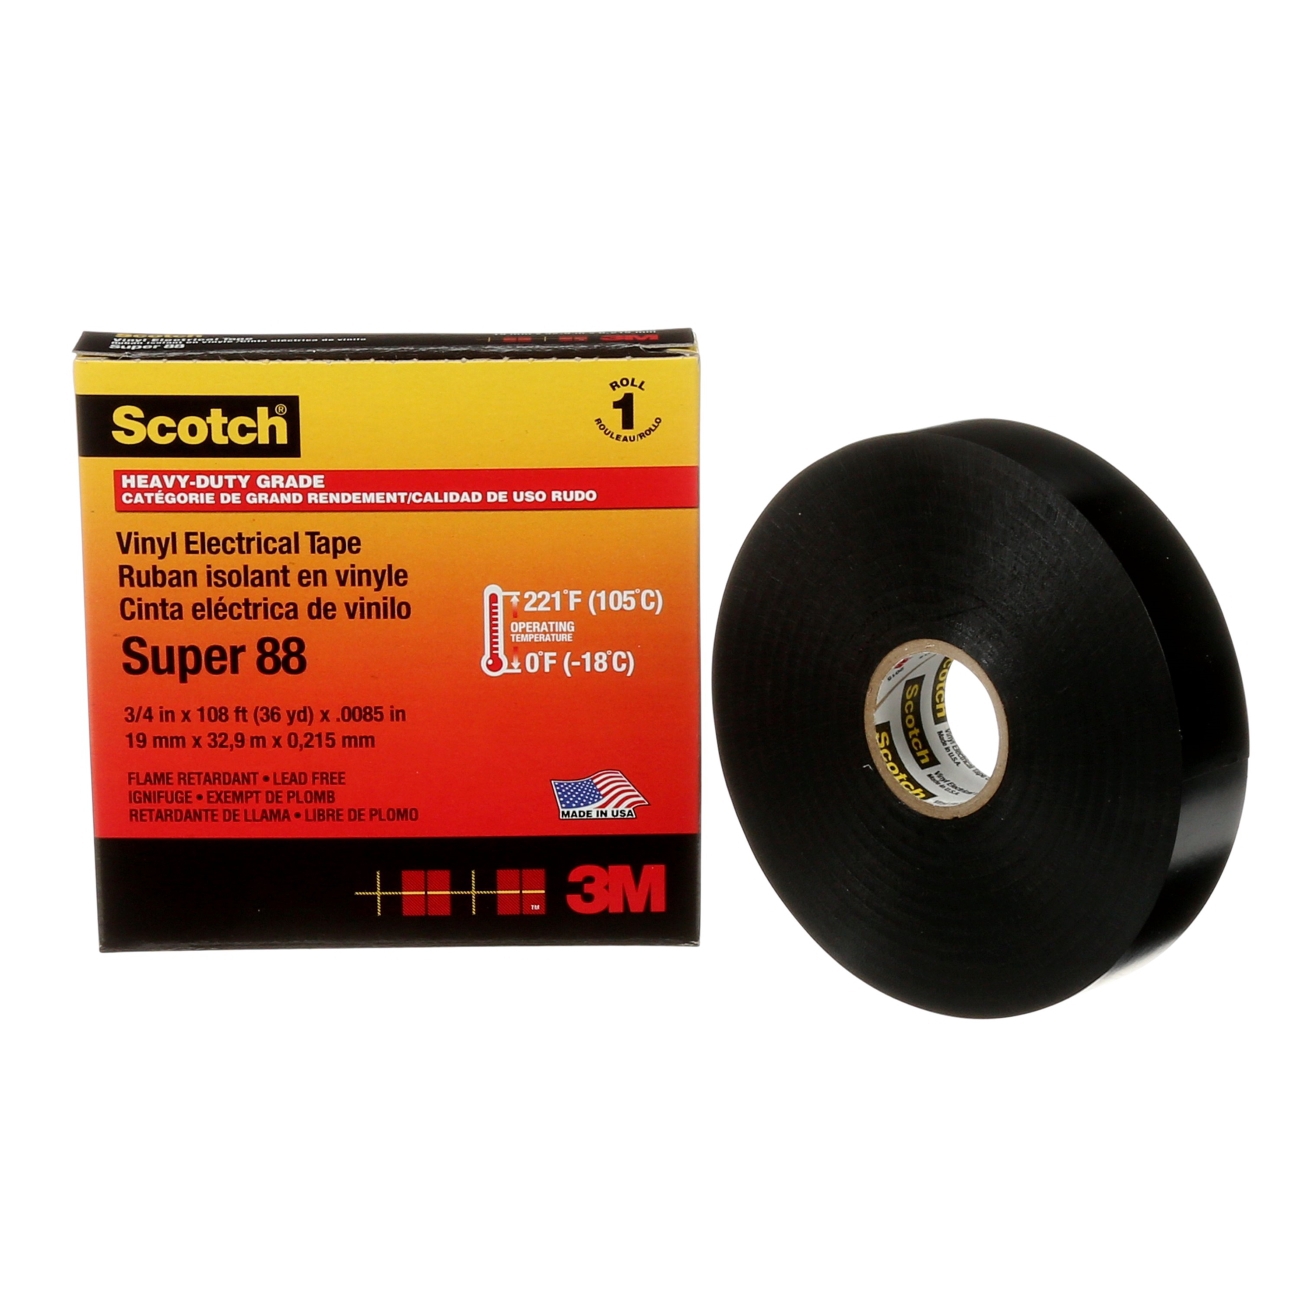 3M Scotch Super 88 Vinyylinen sähköeristysteippi, musta 19 mm x 20 m, 0,22 mm 3M Scotch Super 88 Vinyylinen sähköeristysteippi, musta 19 mm x 20 m, 0,22 mm